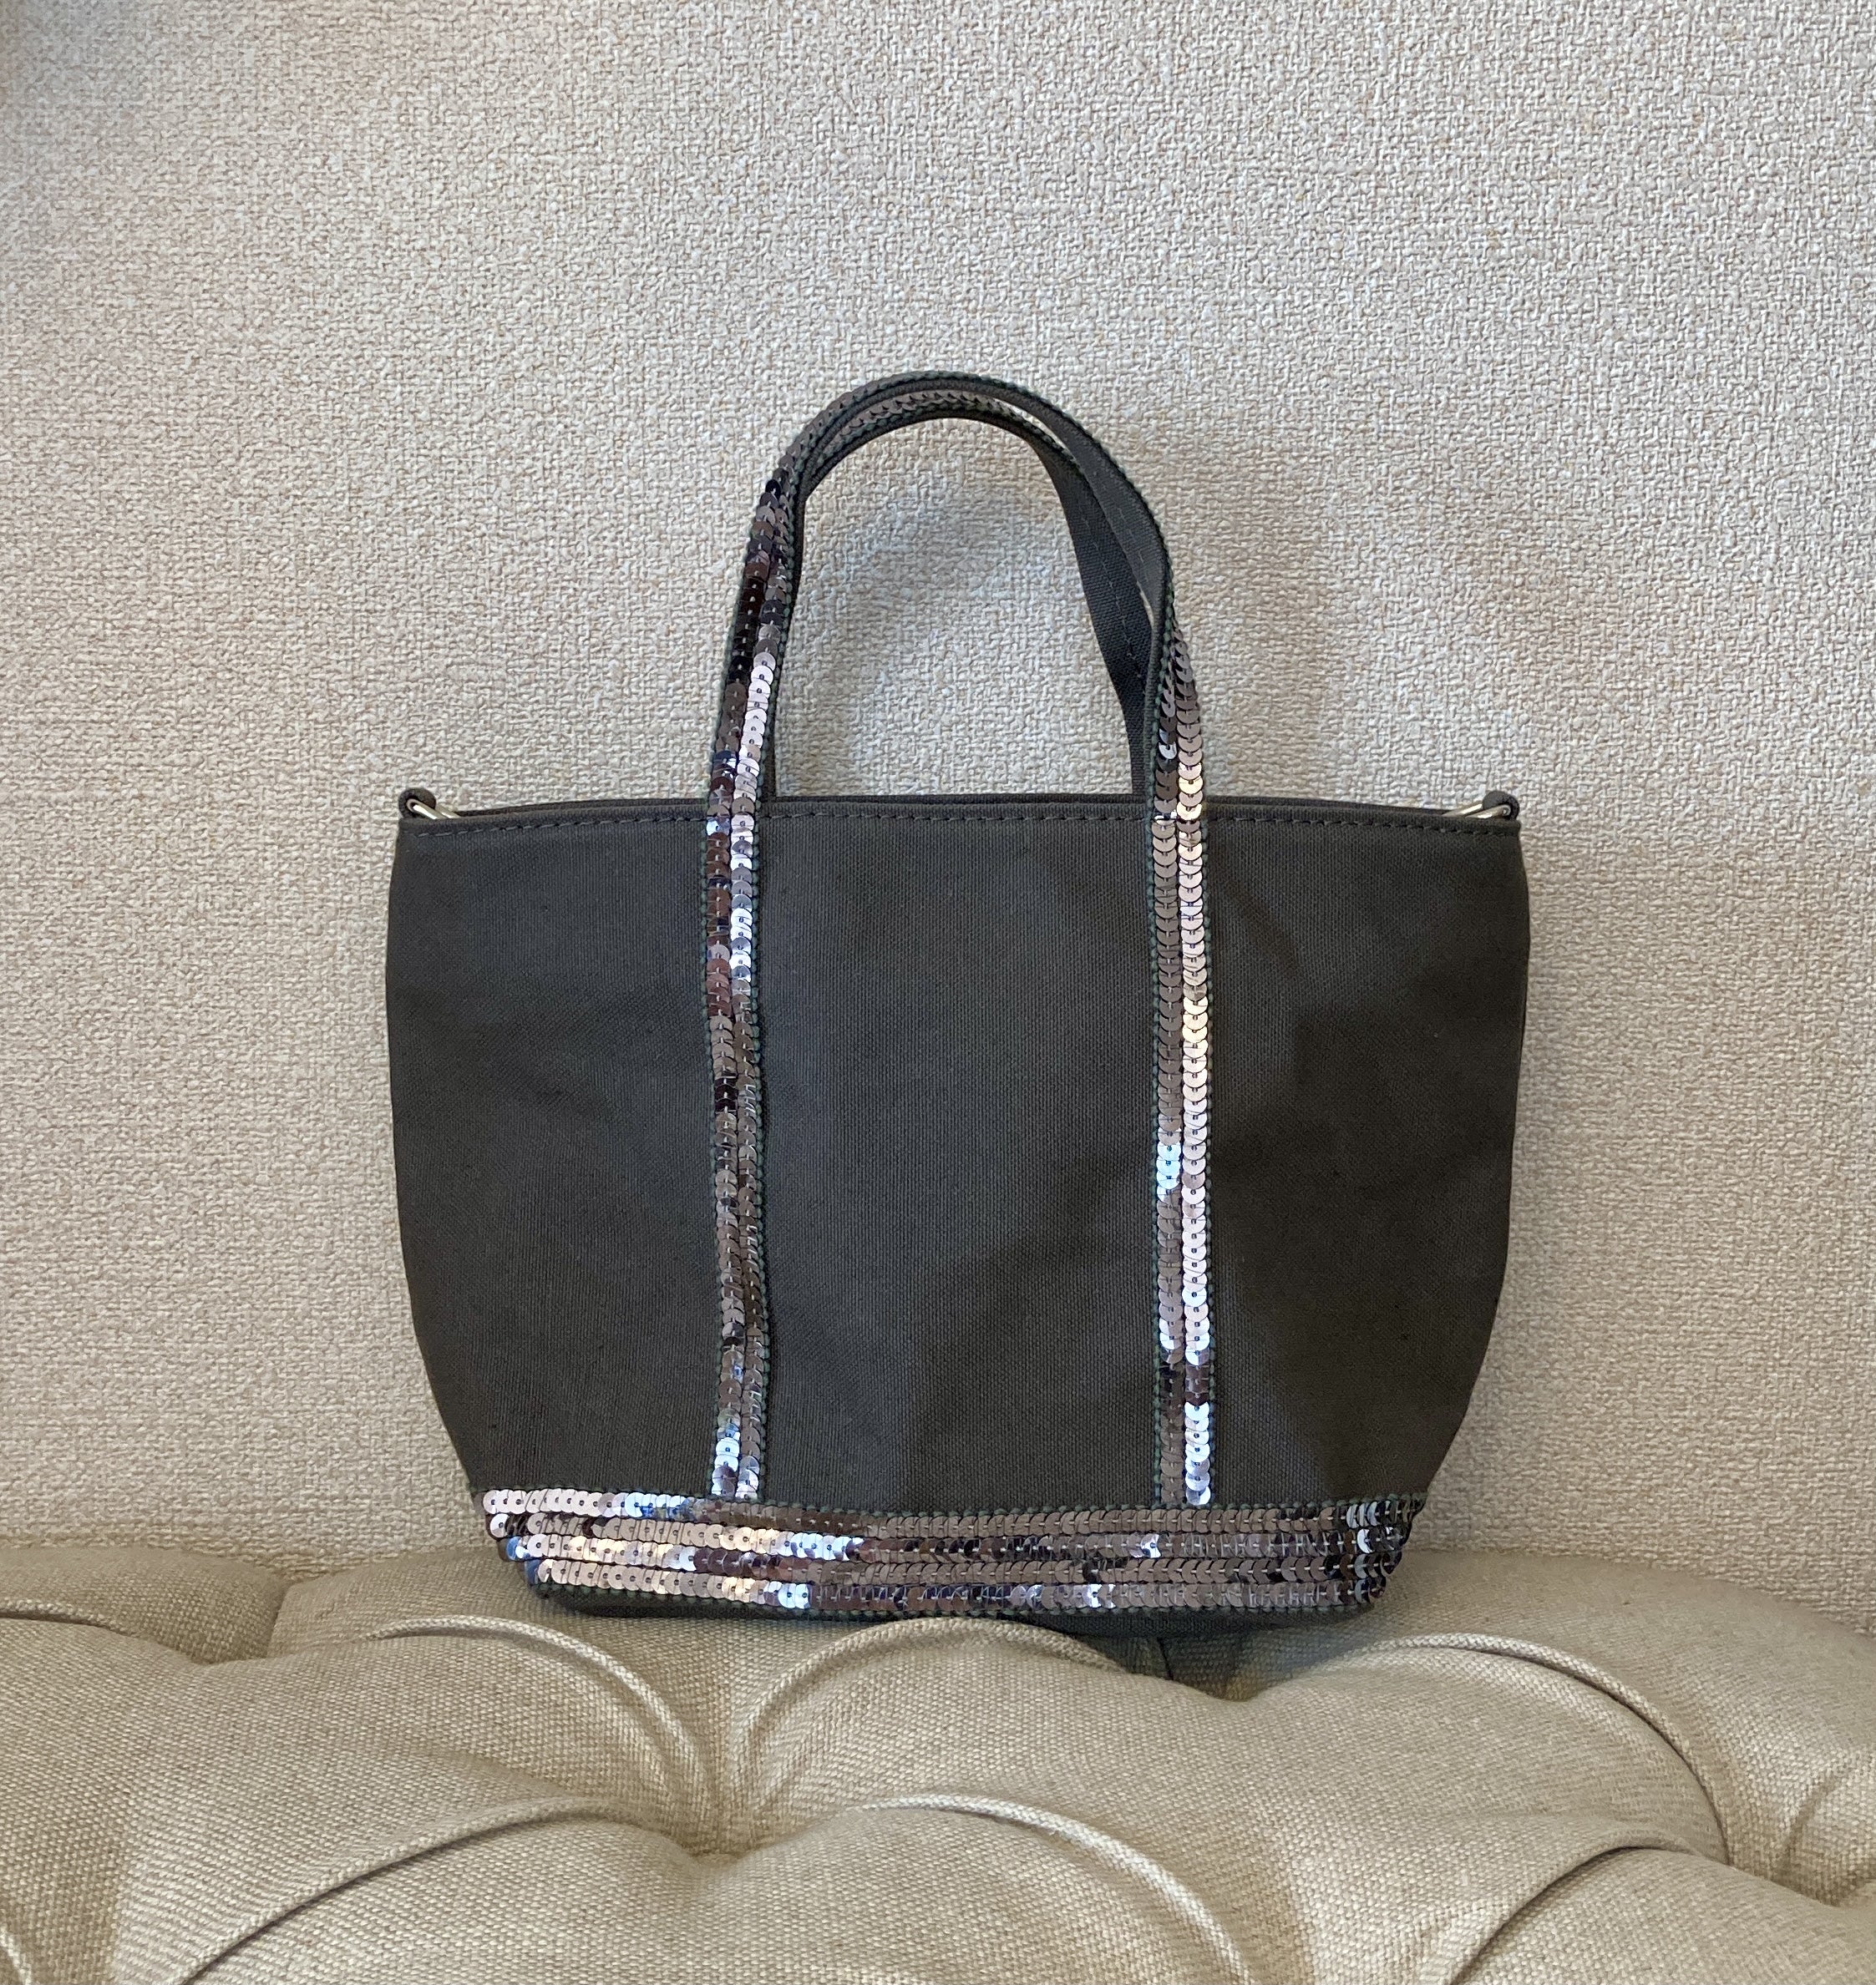 ヴァネッサブリューノのバッグ | Paris♡のブログ